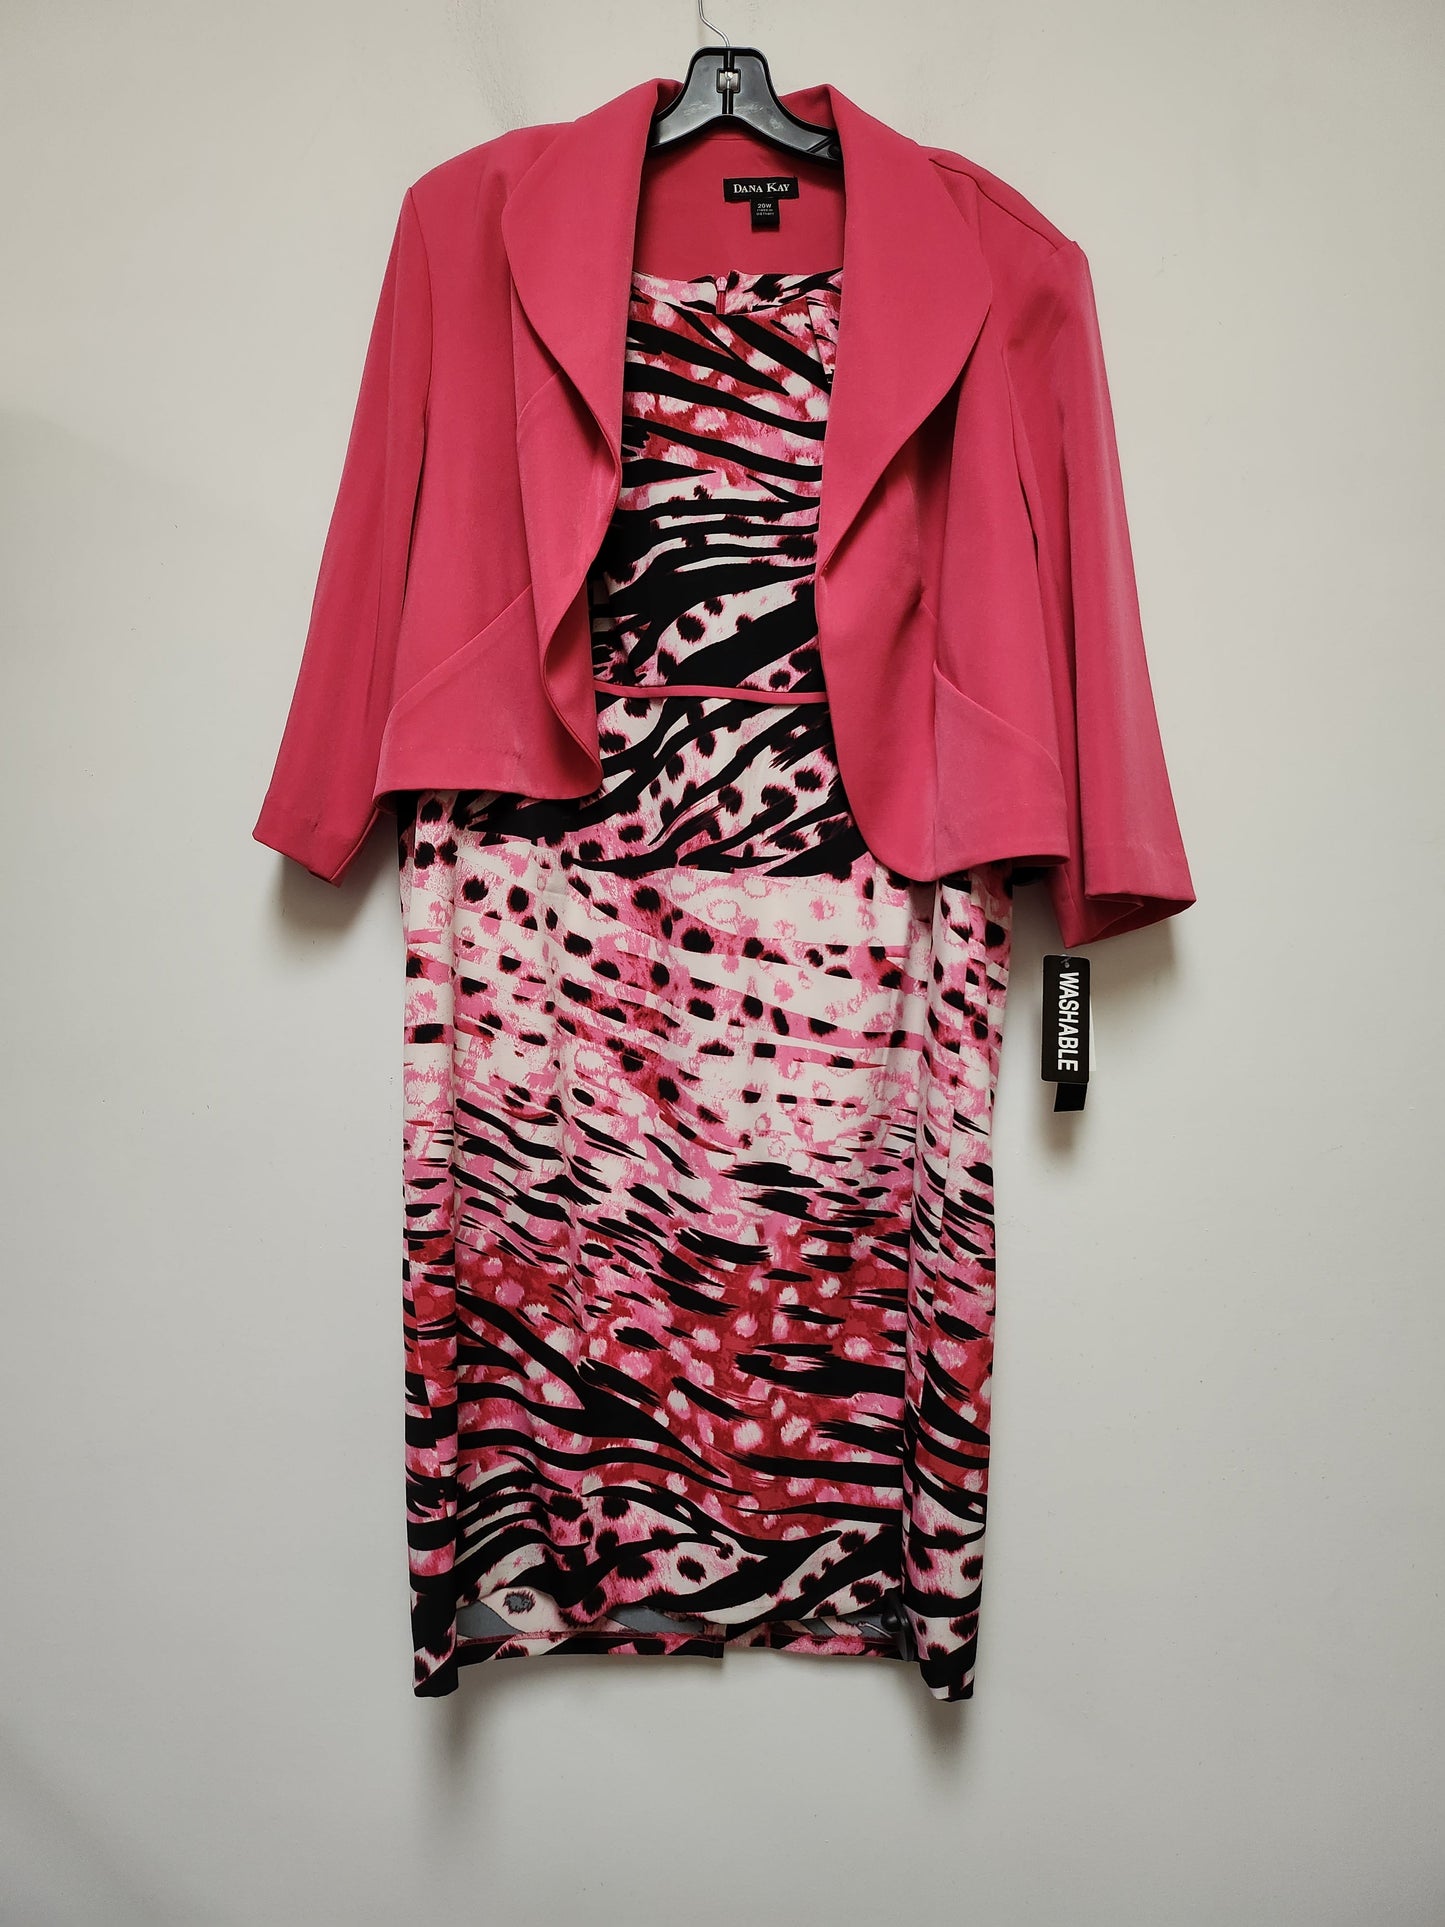 Black & Pink Dress Suit 2pc Clothes Mentor, Size 2x